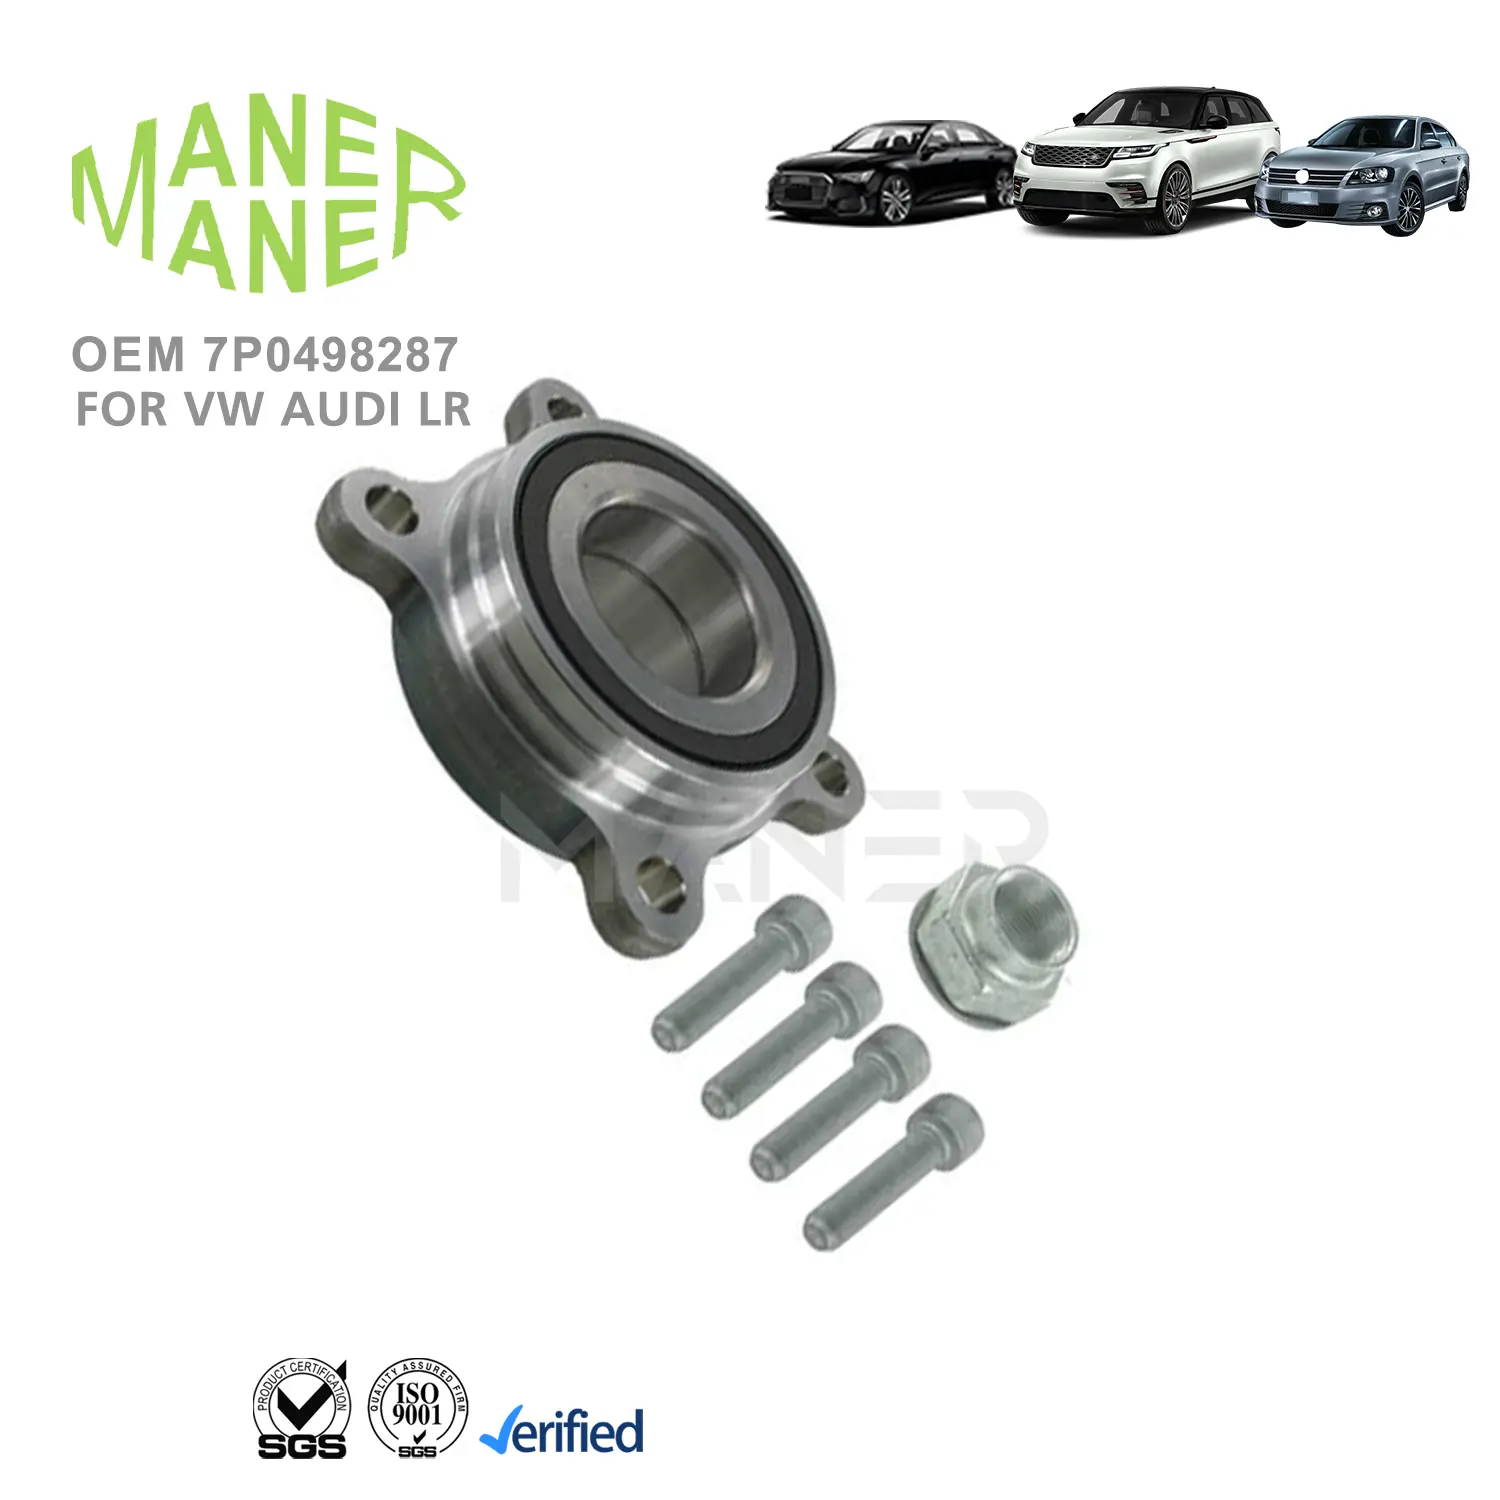 MANER 7P0498287 자동 엔진 시스템 안전 및 안정성 VW Touareg용 안정적인 휠 허브 베어링 조립 키트 최고의 서비스